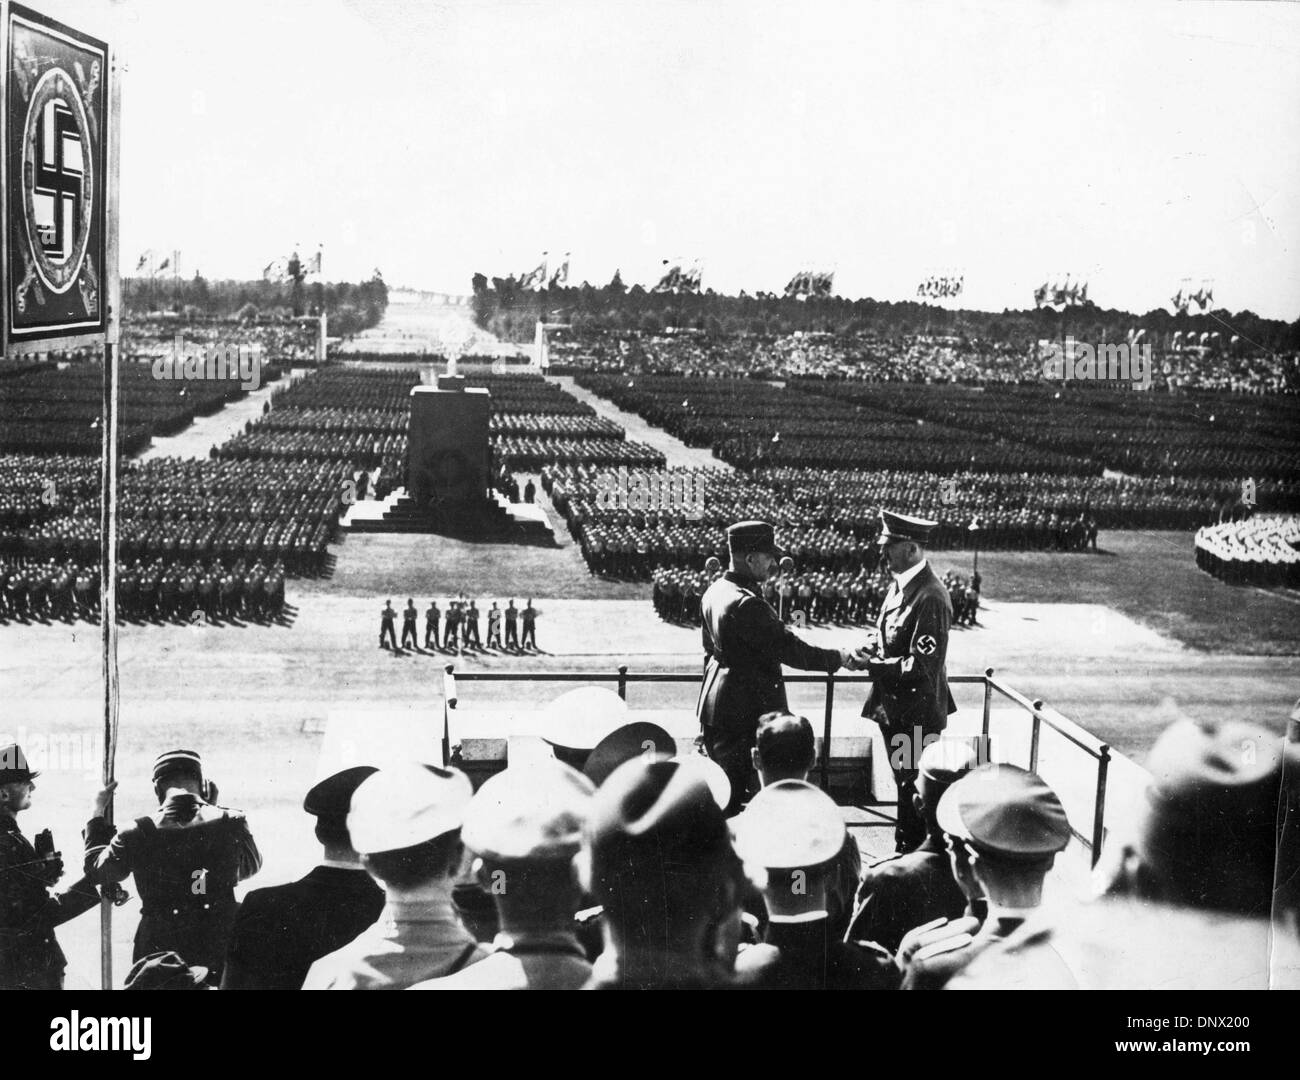 Sett. 8, 1937 - Norimberga, Germania - KONSTANTIN HIERL (L) stringe la mano con il leader nazista ADOLF HITLER durante l annuale del partito nazista il Congresso di Norimberga nel 1937. (Credito Immagine: © Keystone Pictures USA/ZUMAPRESS.com) Foto Stock